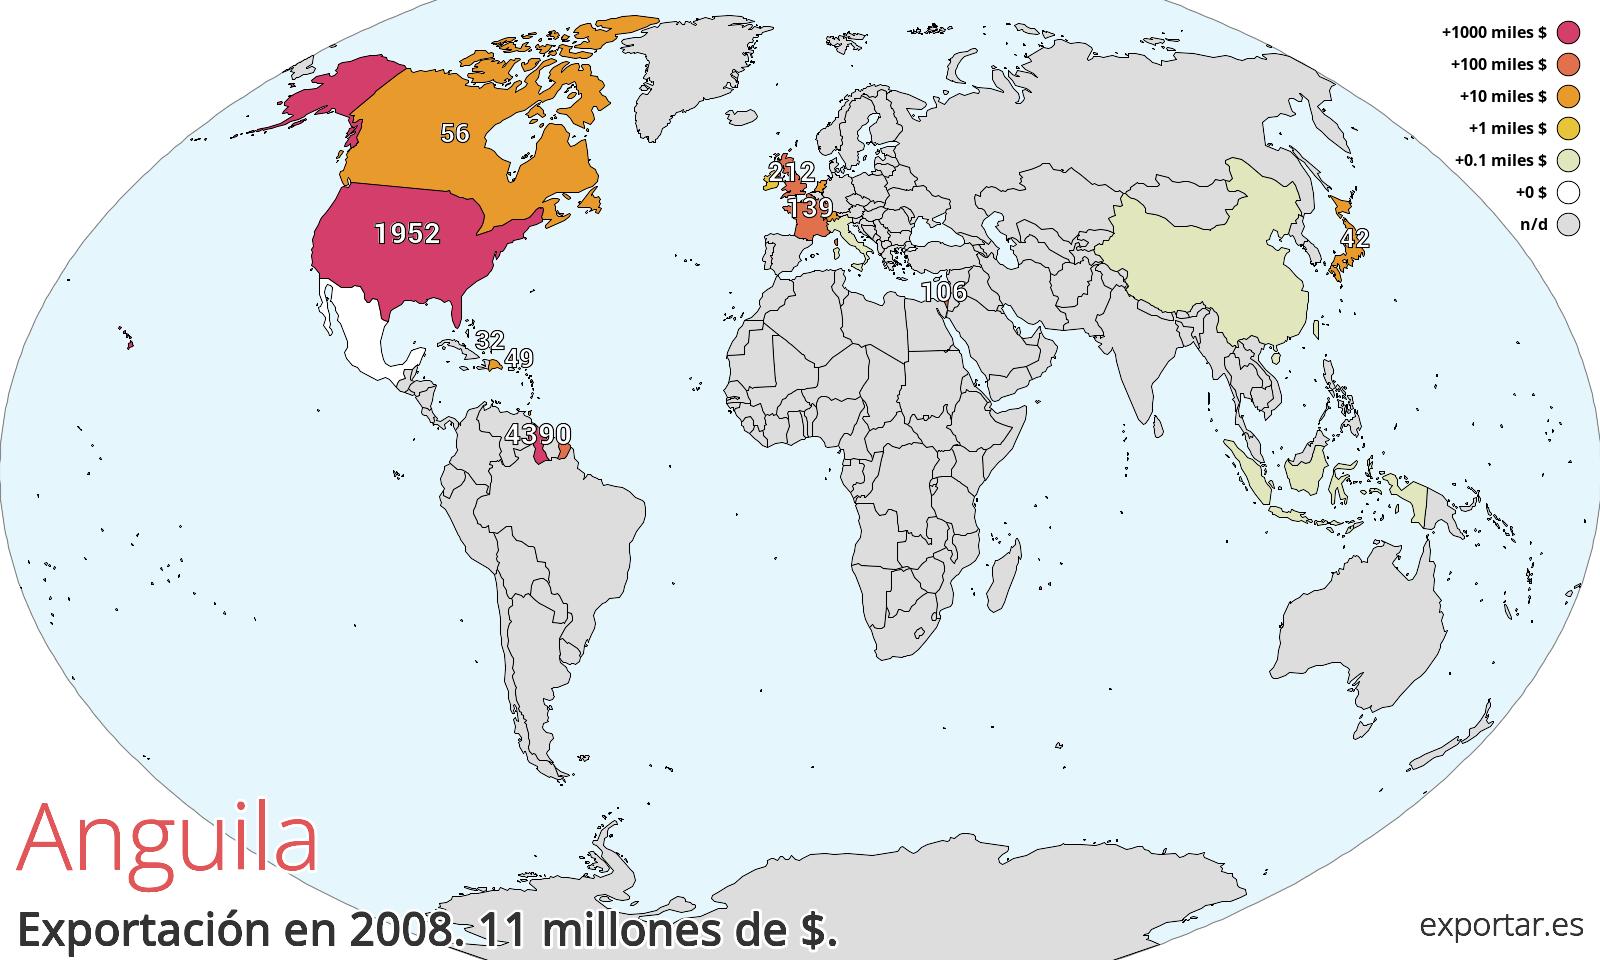 Mapa de exportación de Anguila en 2008.